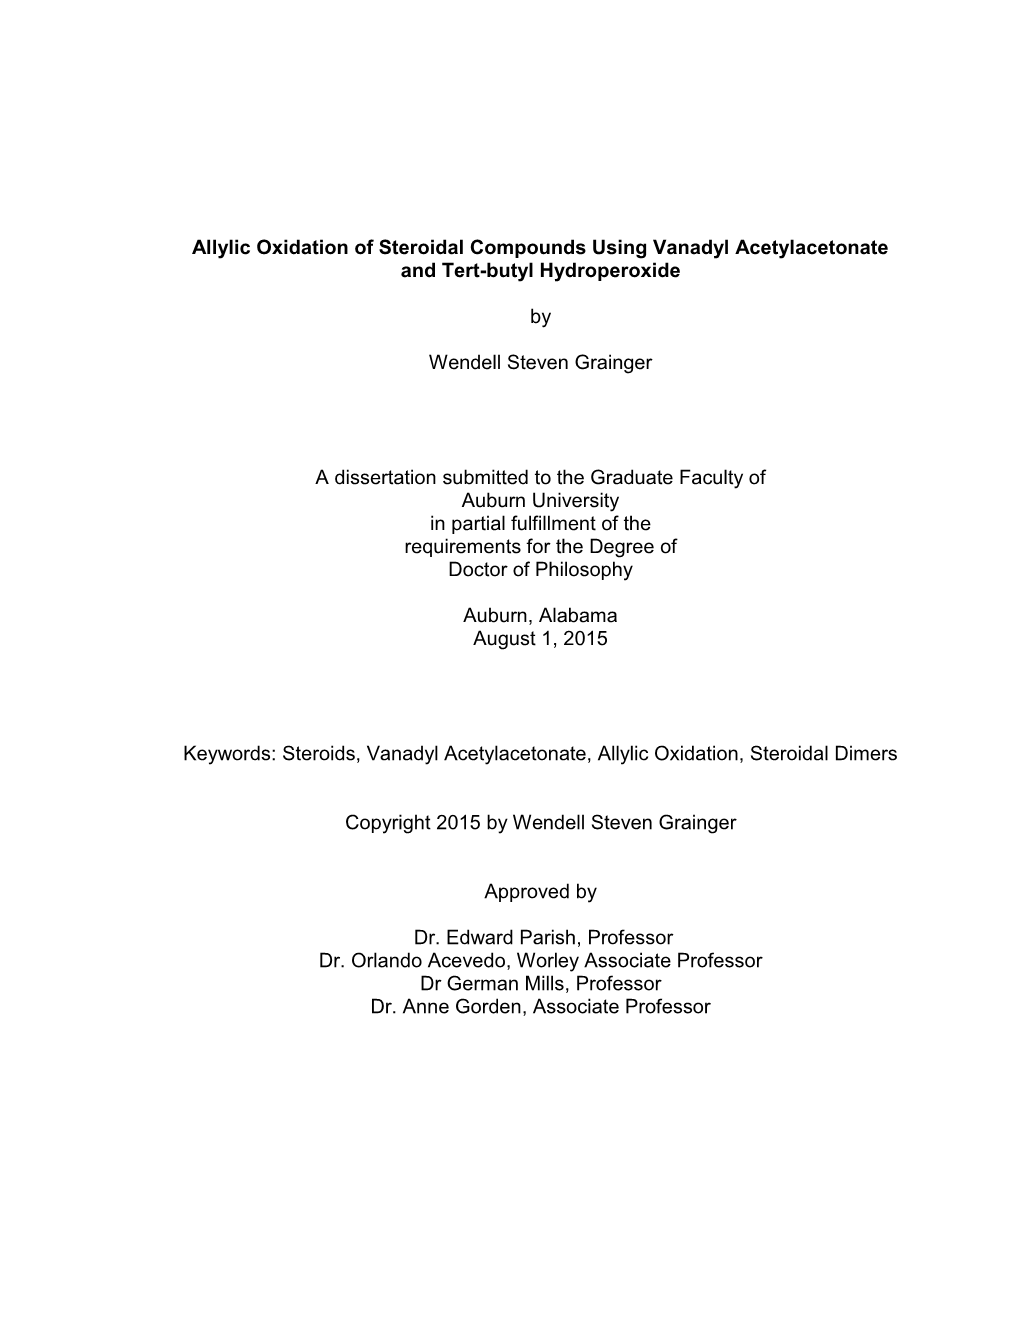 Wendell's Dissertation 072015.Pdf